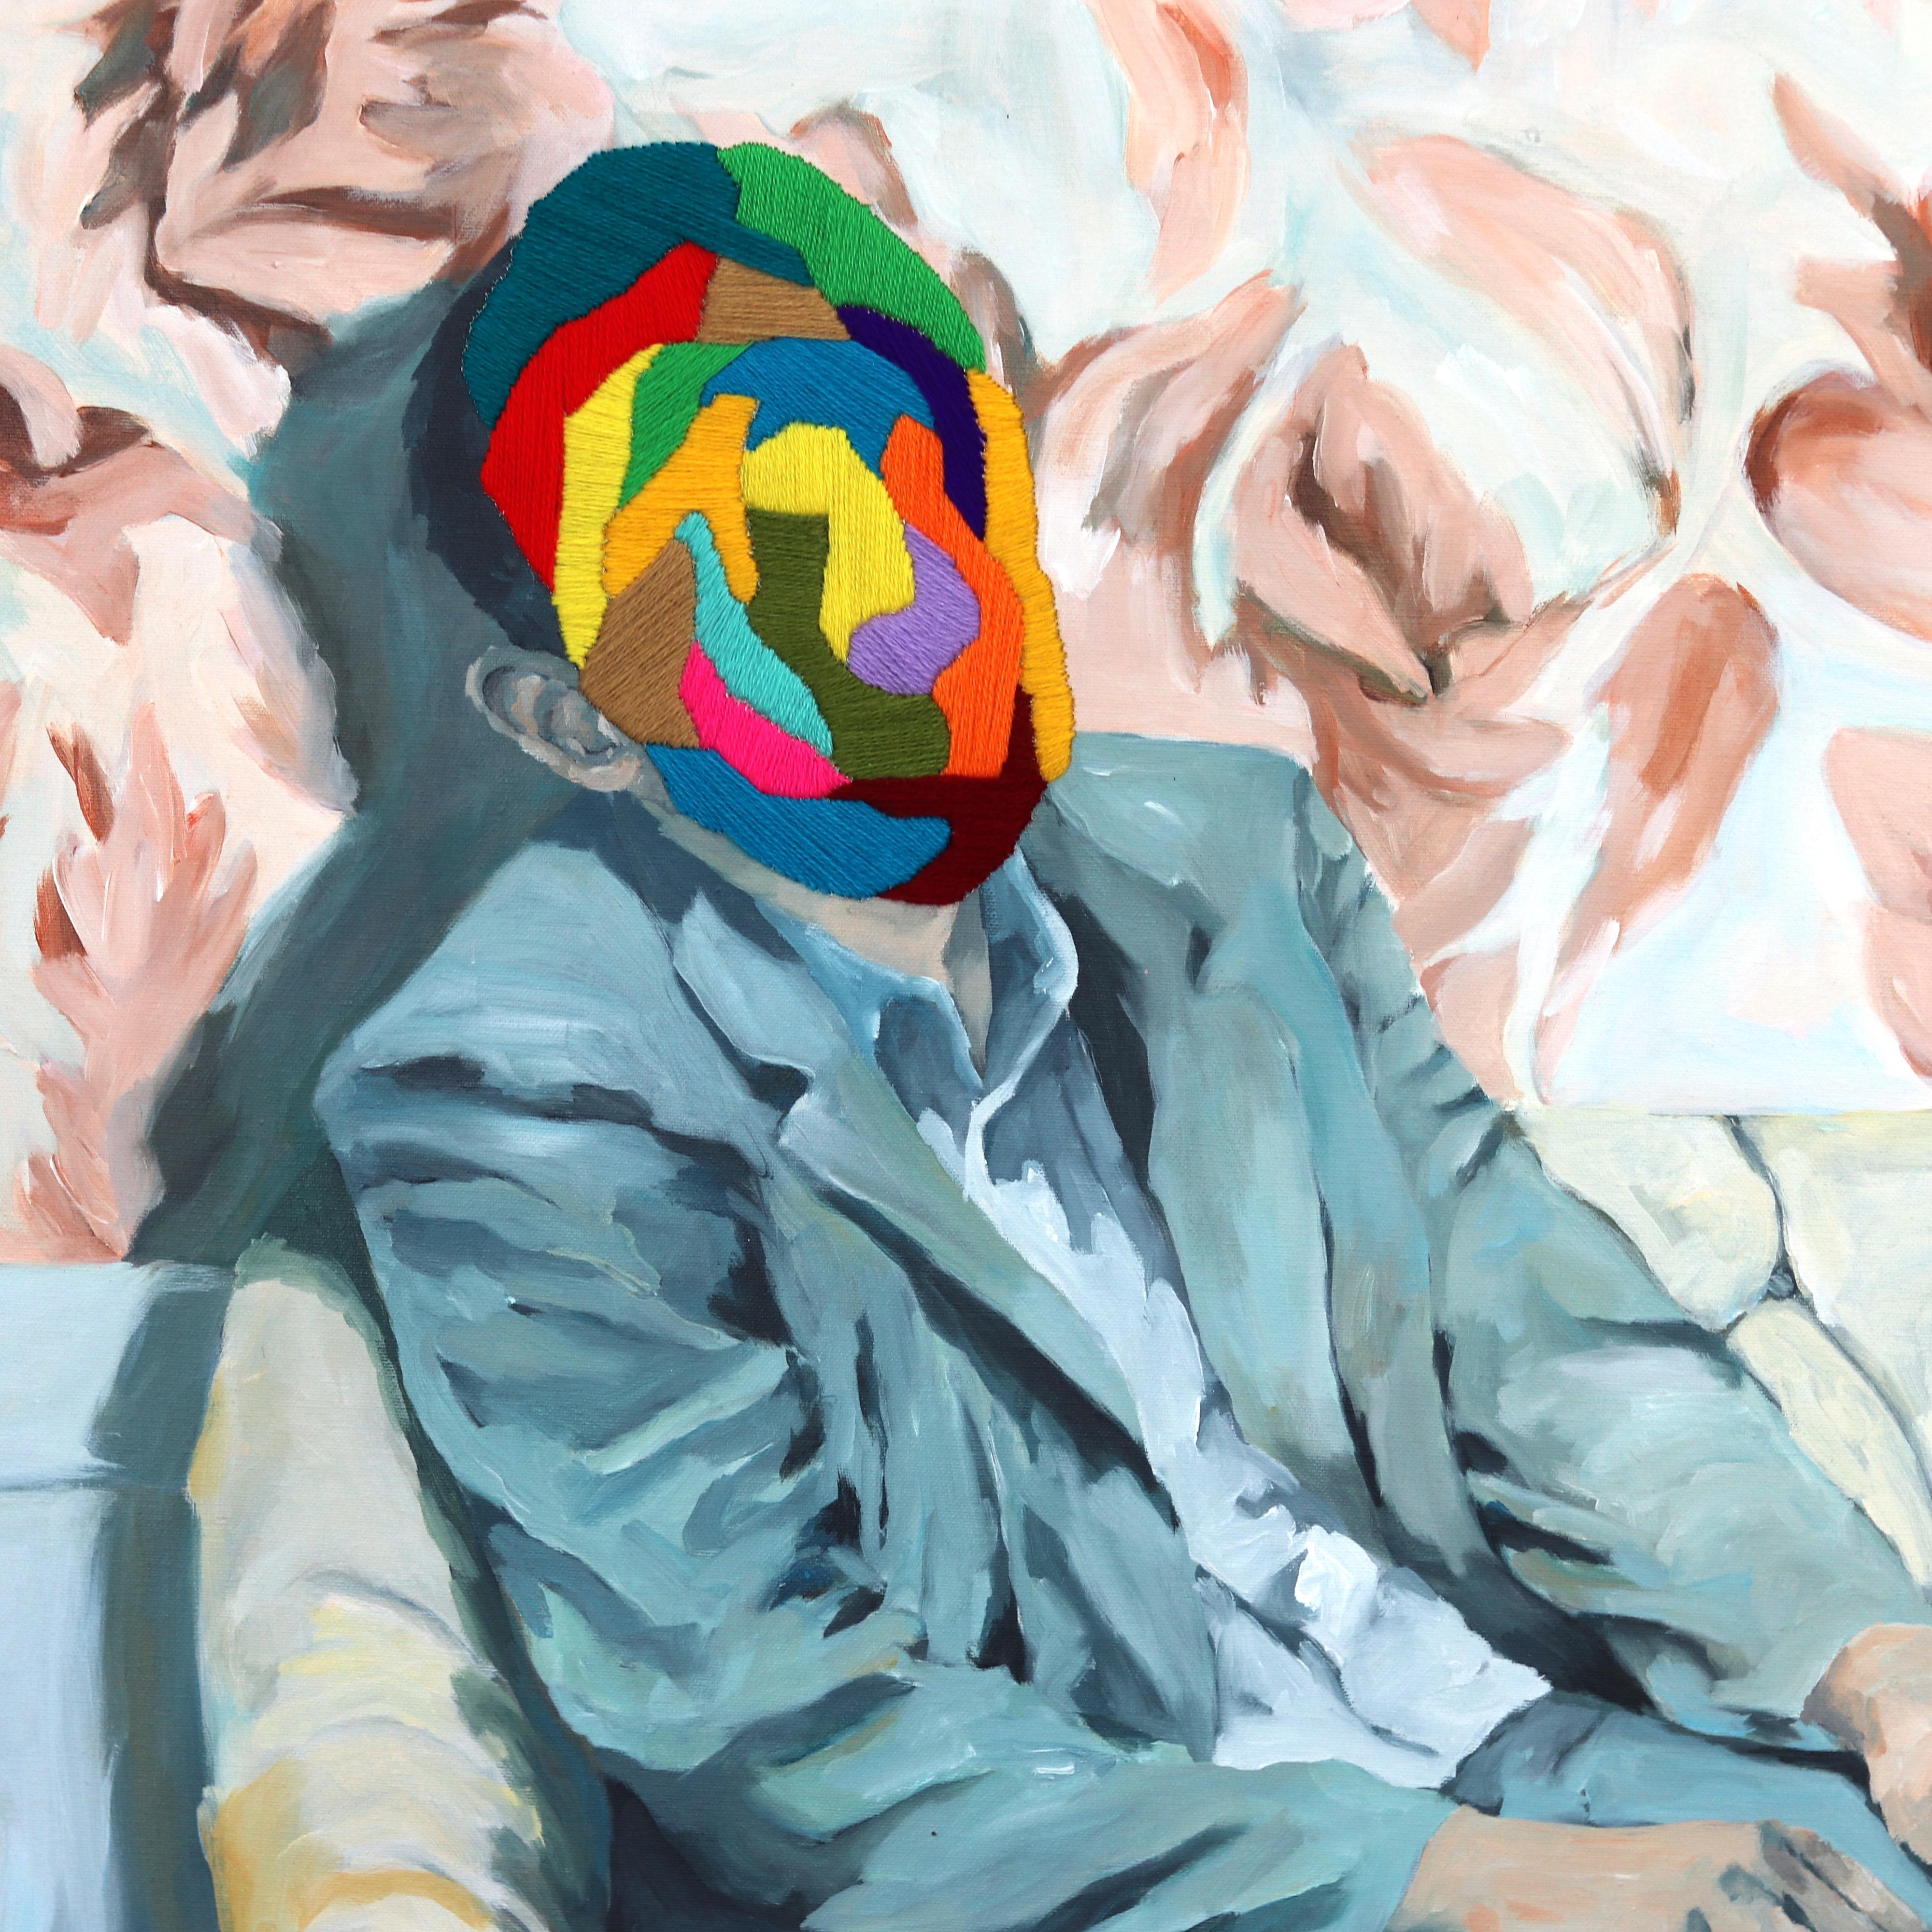 Die surrealen figurativen Gemälde von Iqi Qoror bestechen durch ihre erdige Farbpalette, die durch fluoreszierende Textilstickereien aufgelockert wird. Seine Werke kreisen um Fragen des Vertrauens, durchsetzt mit Fragmenten der Moderne, denen er